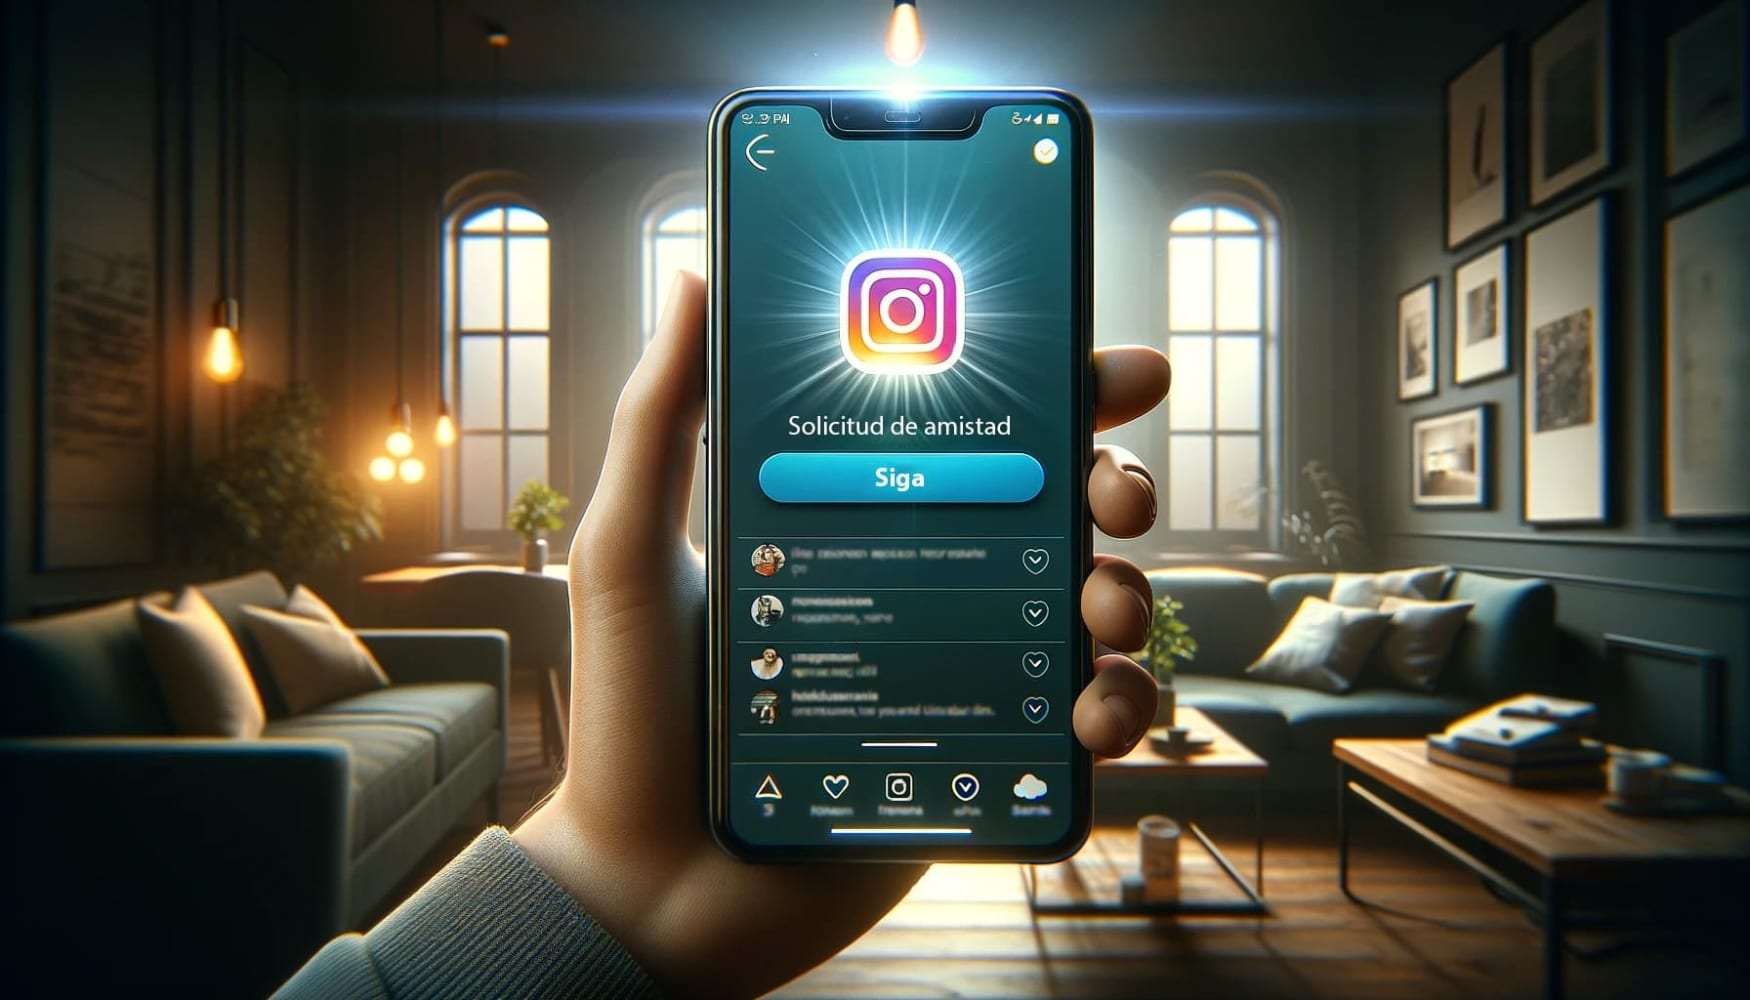 La ilustración muestra una mano sosteniendo un smartphone con la interfaz de Instagram en la pantalla. La pantalla muestra una notificación de solicitud de amistad con un botón "Seguir" claro y vibrante.